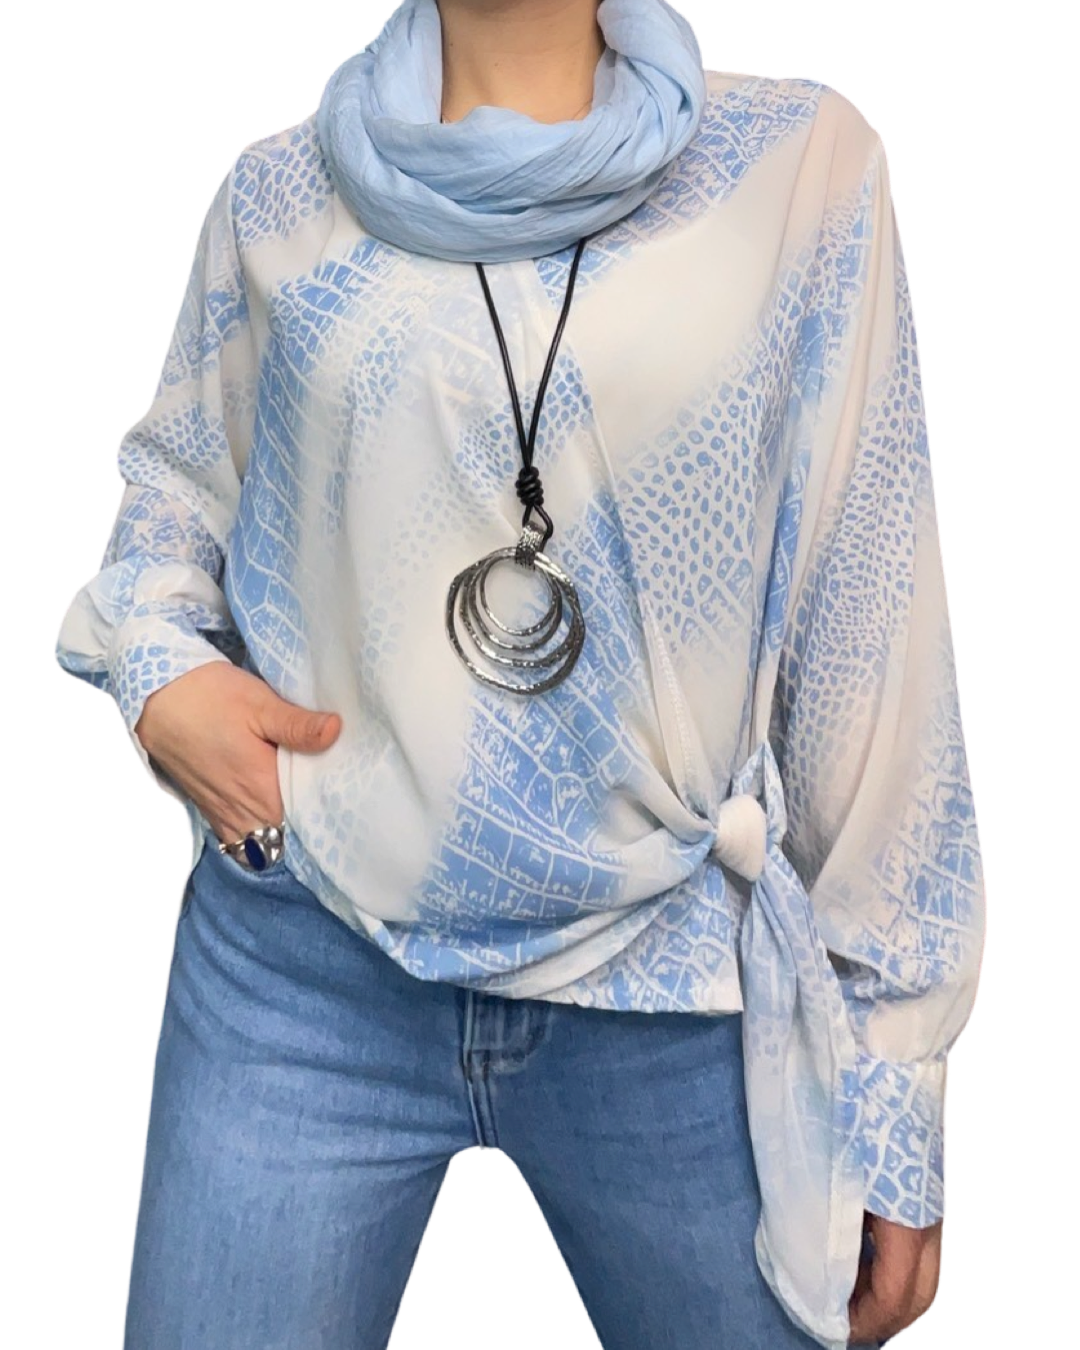 Blouse blanche pour femme à manche longue avec noeud et imprimé bleu. Portée avec un foulard et un collier long.